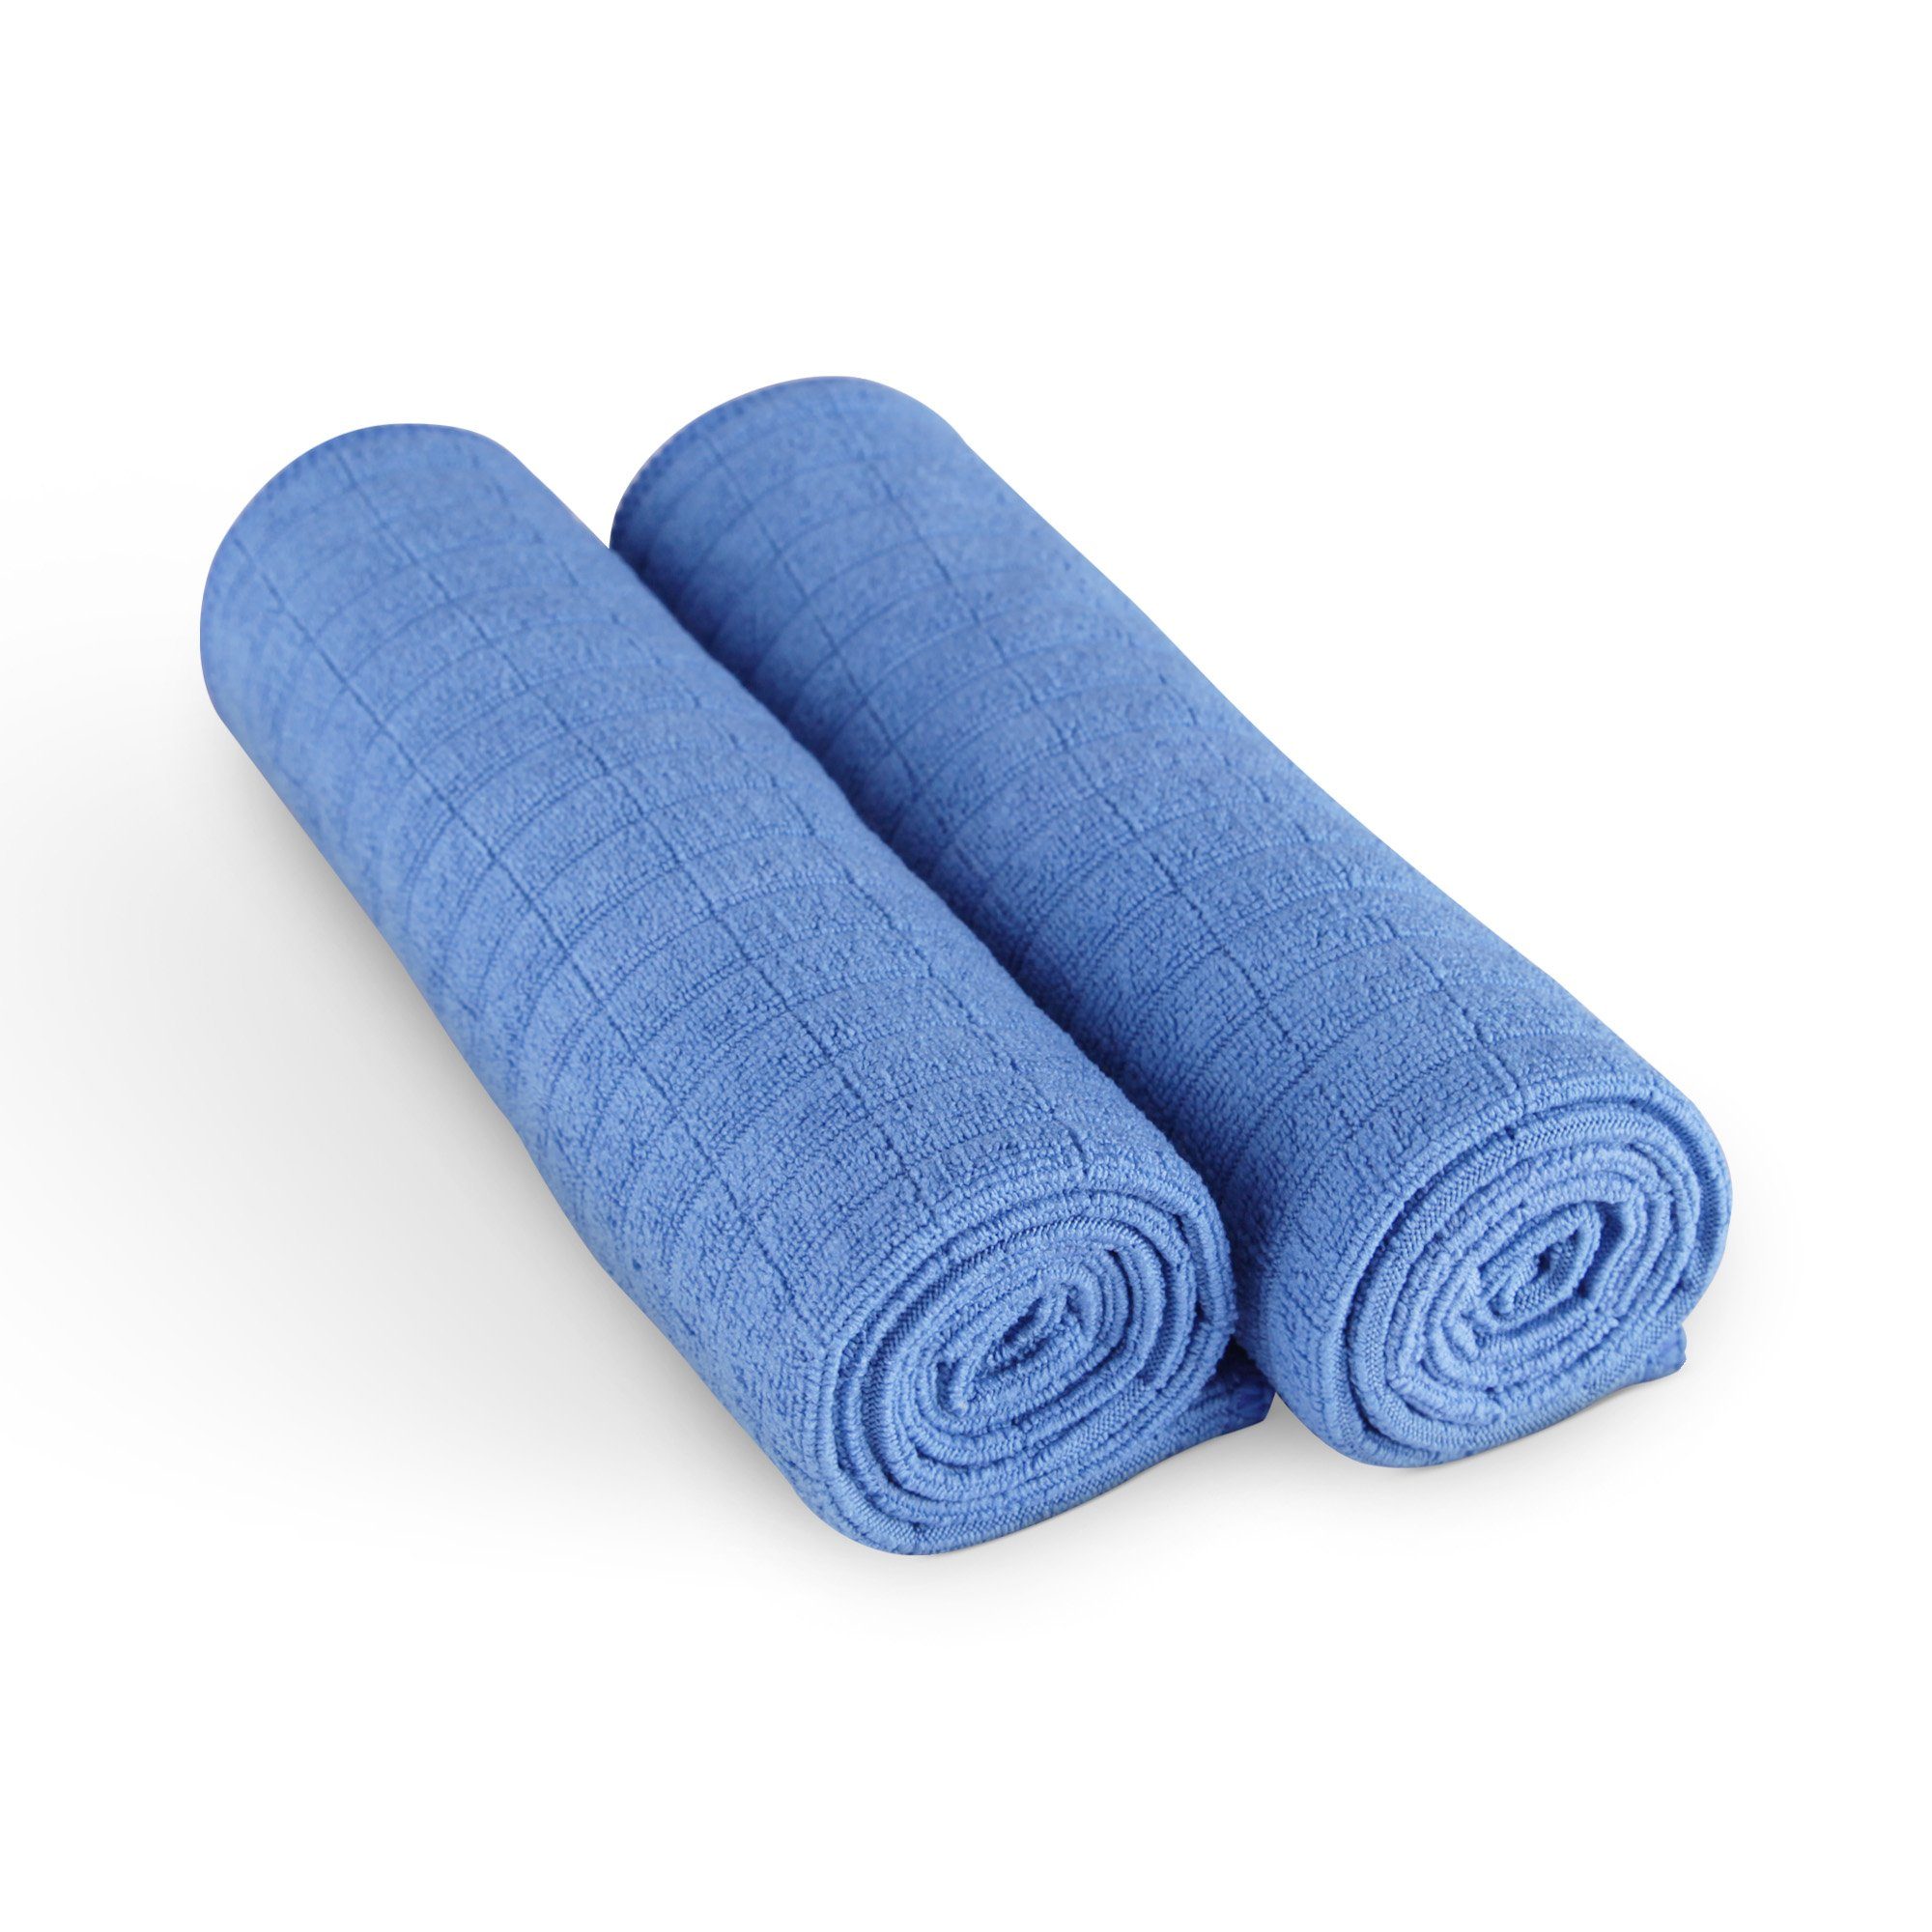 Bestlivings 20384 Geschirrtücher Mikrofasertuch (80% Polyester 20% Polyamid, 45x65 cm, 2-tlg., Microfasertuch Handtuch - Reinigungstuch - hochwertig 300g/m² Qualität) Blau